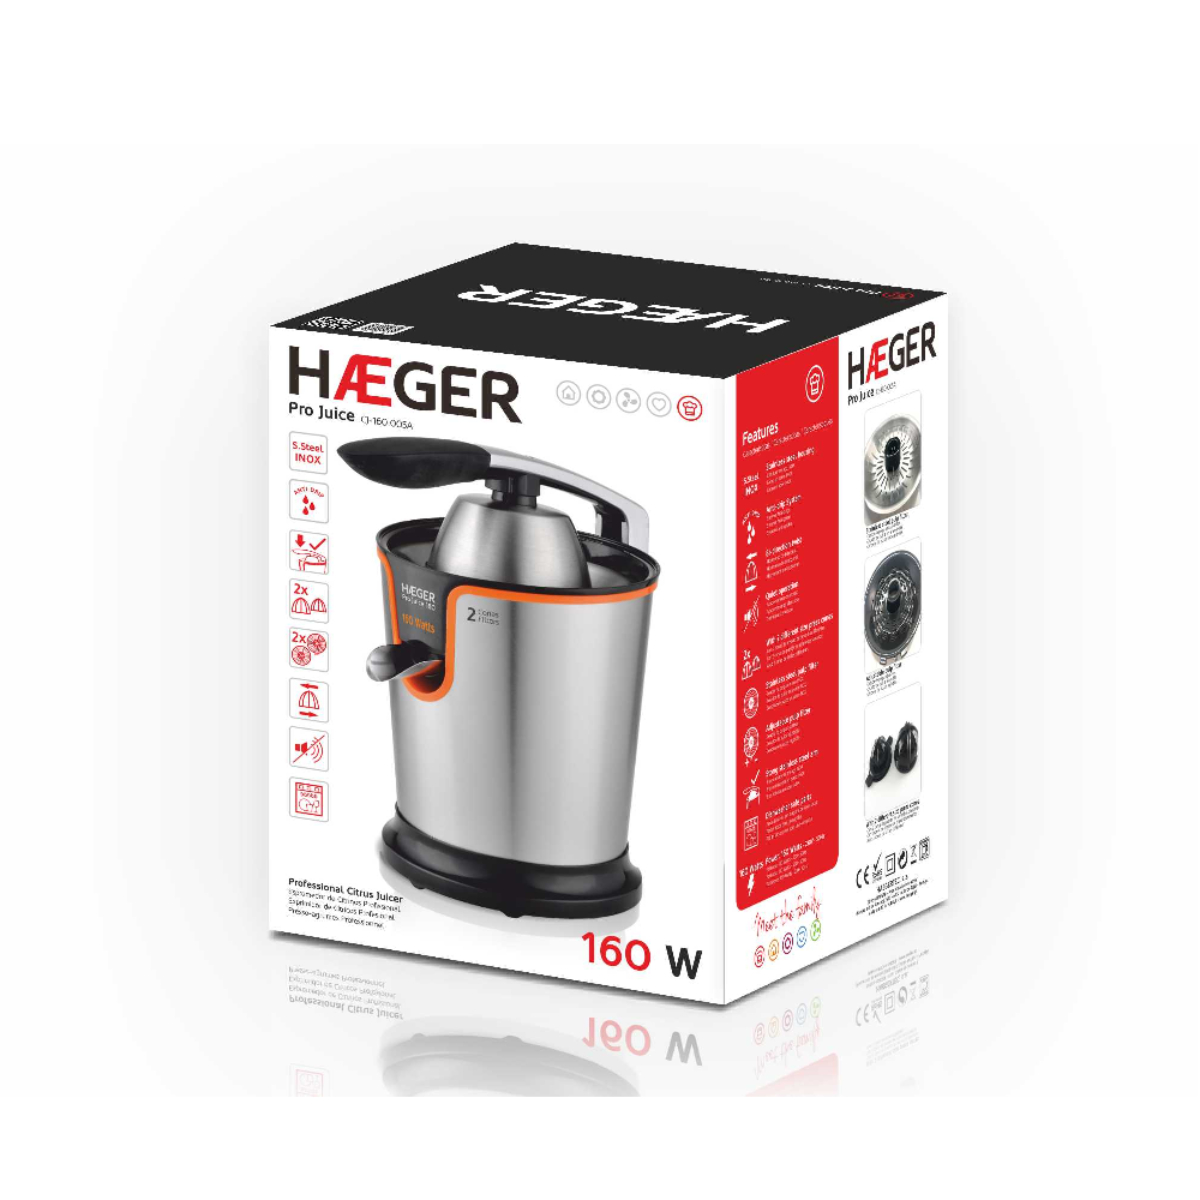 HAEGER Haeger Pro Juice Zitruspresse Watt, Silber 160